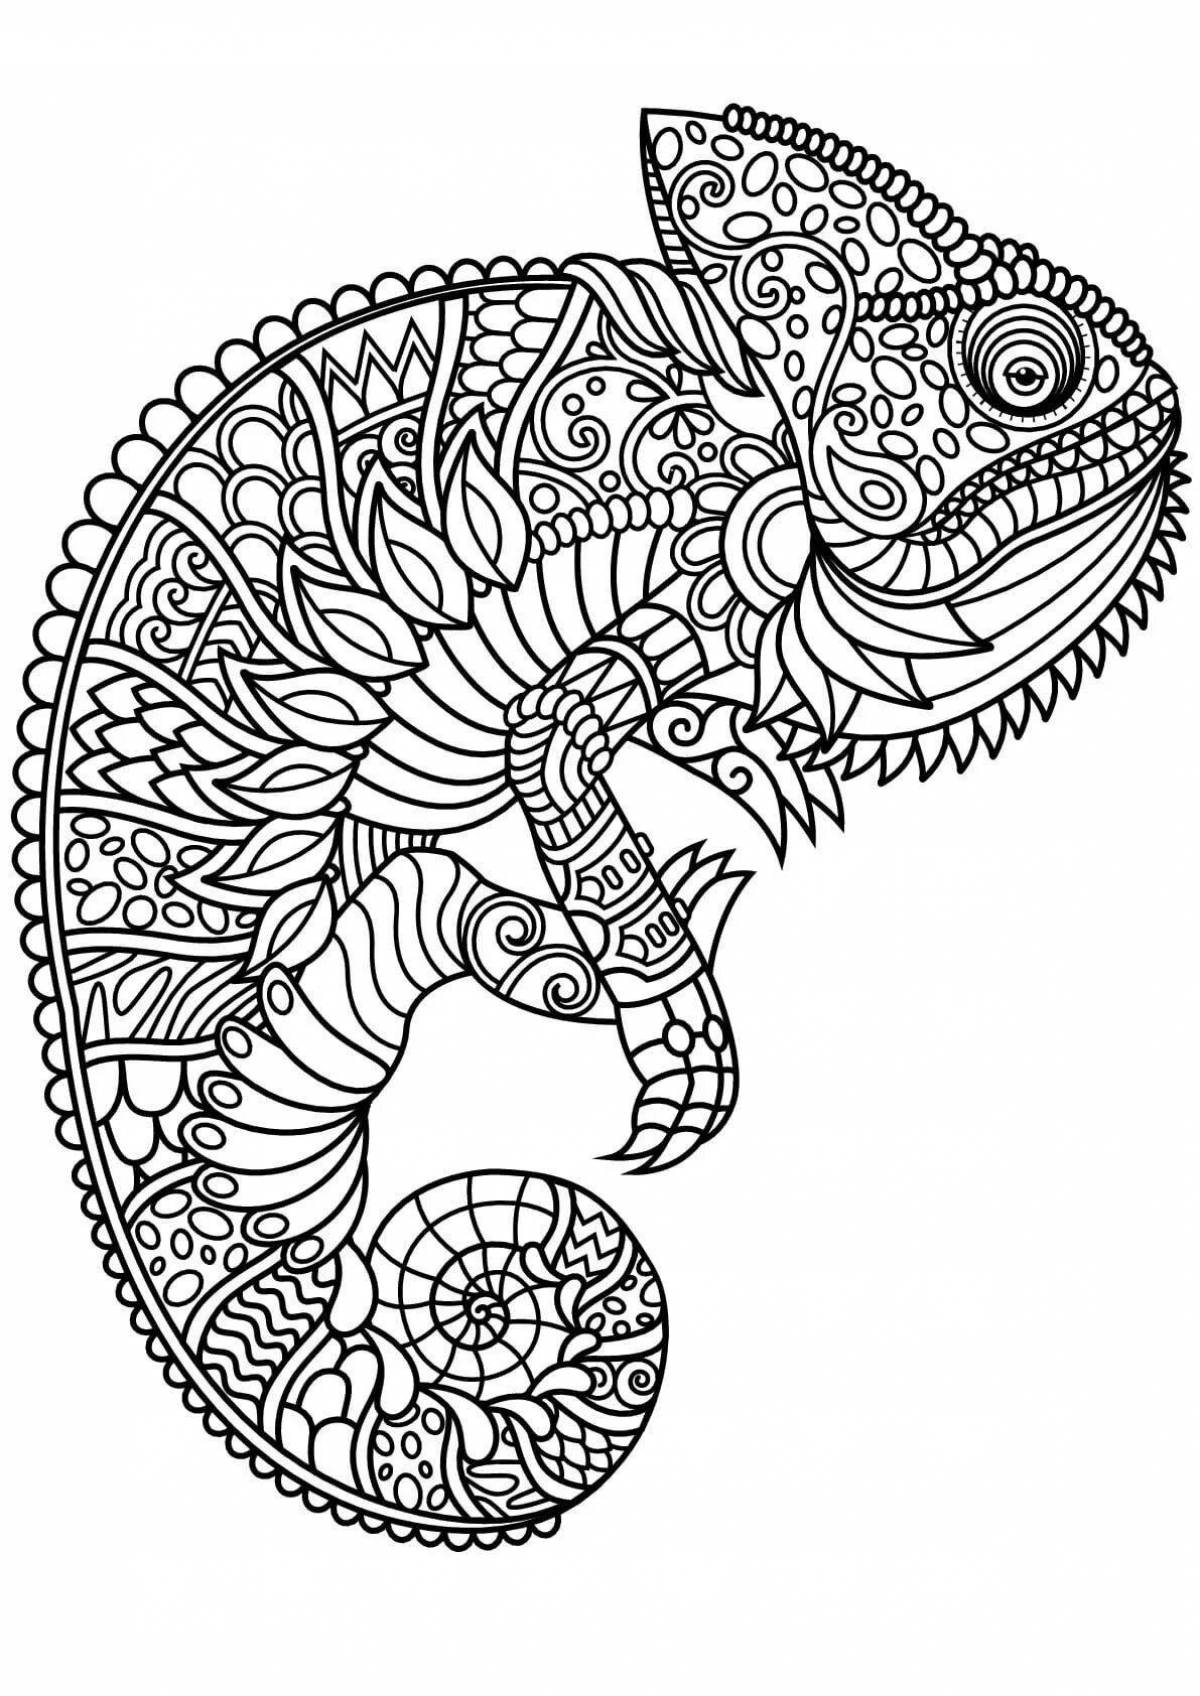 Coloring page happy animal mandala